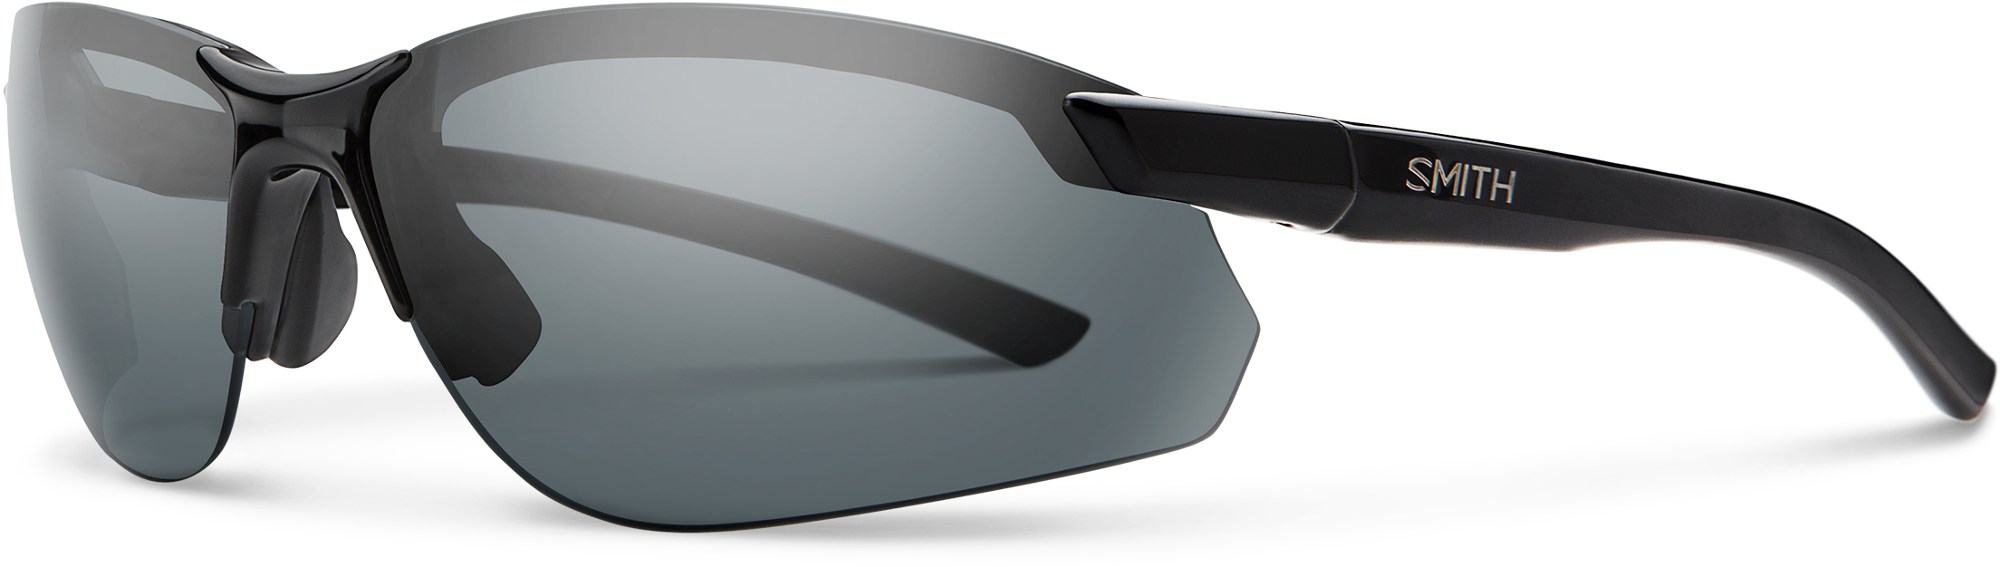 Поляризованные солнцезащитные очки Parallel 2 Max Smith, черный altera parallel port simulator pl byteblaster2 0b parallel port download line burner